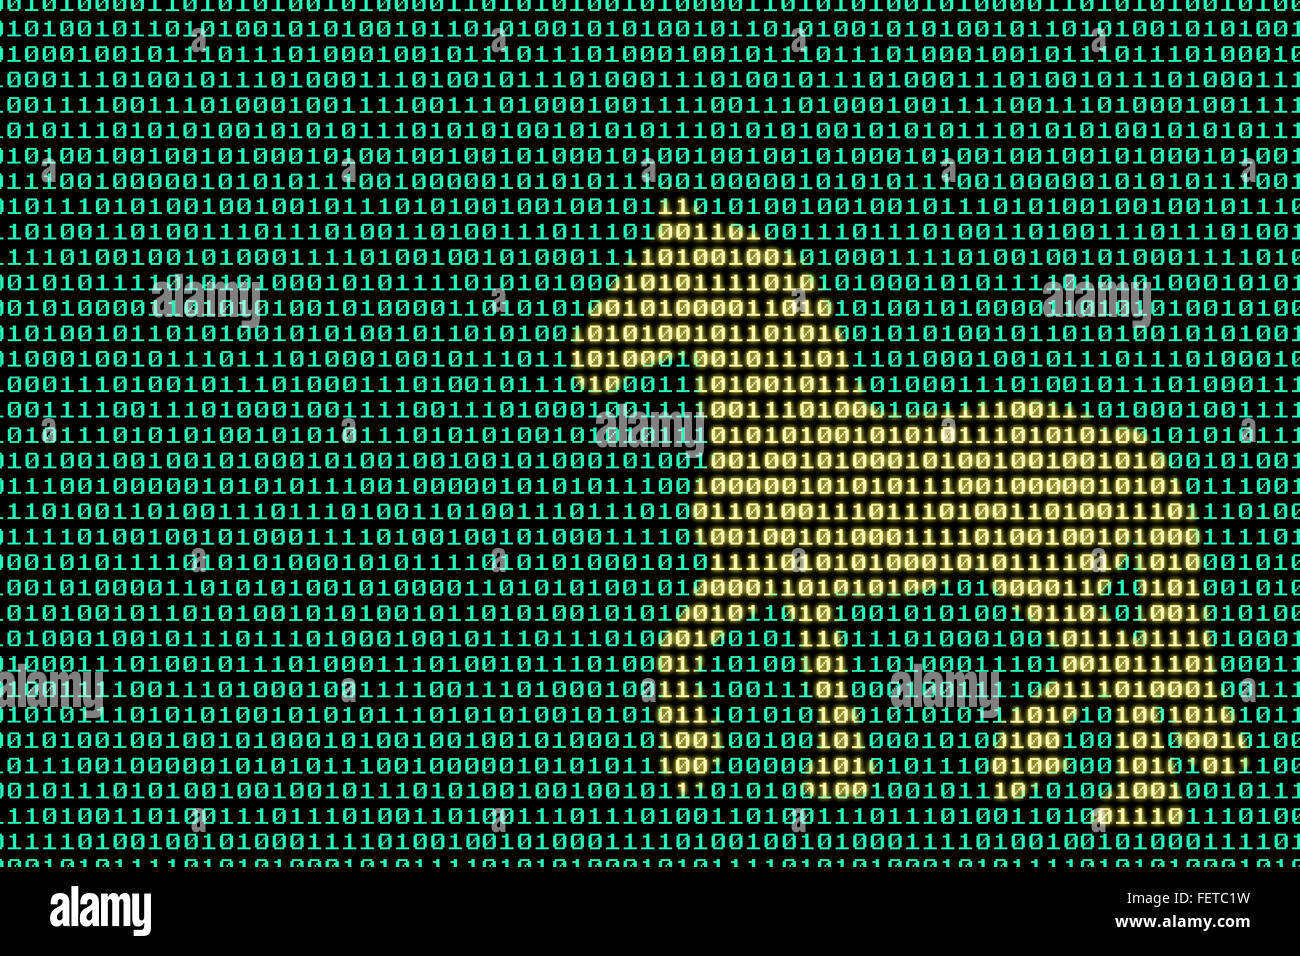 Trojanisches Pferd, Konzeptbild von Trojaner, Malware, Computer-Virus... versteckt im Binär-Code Stockfoto